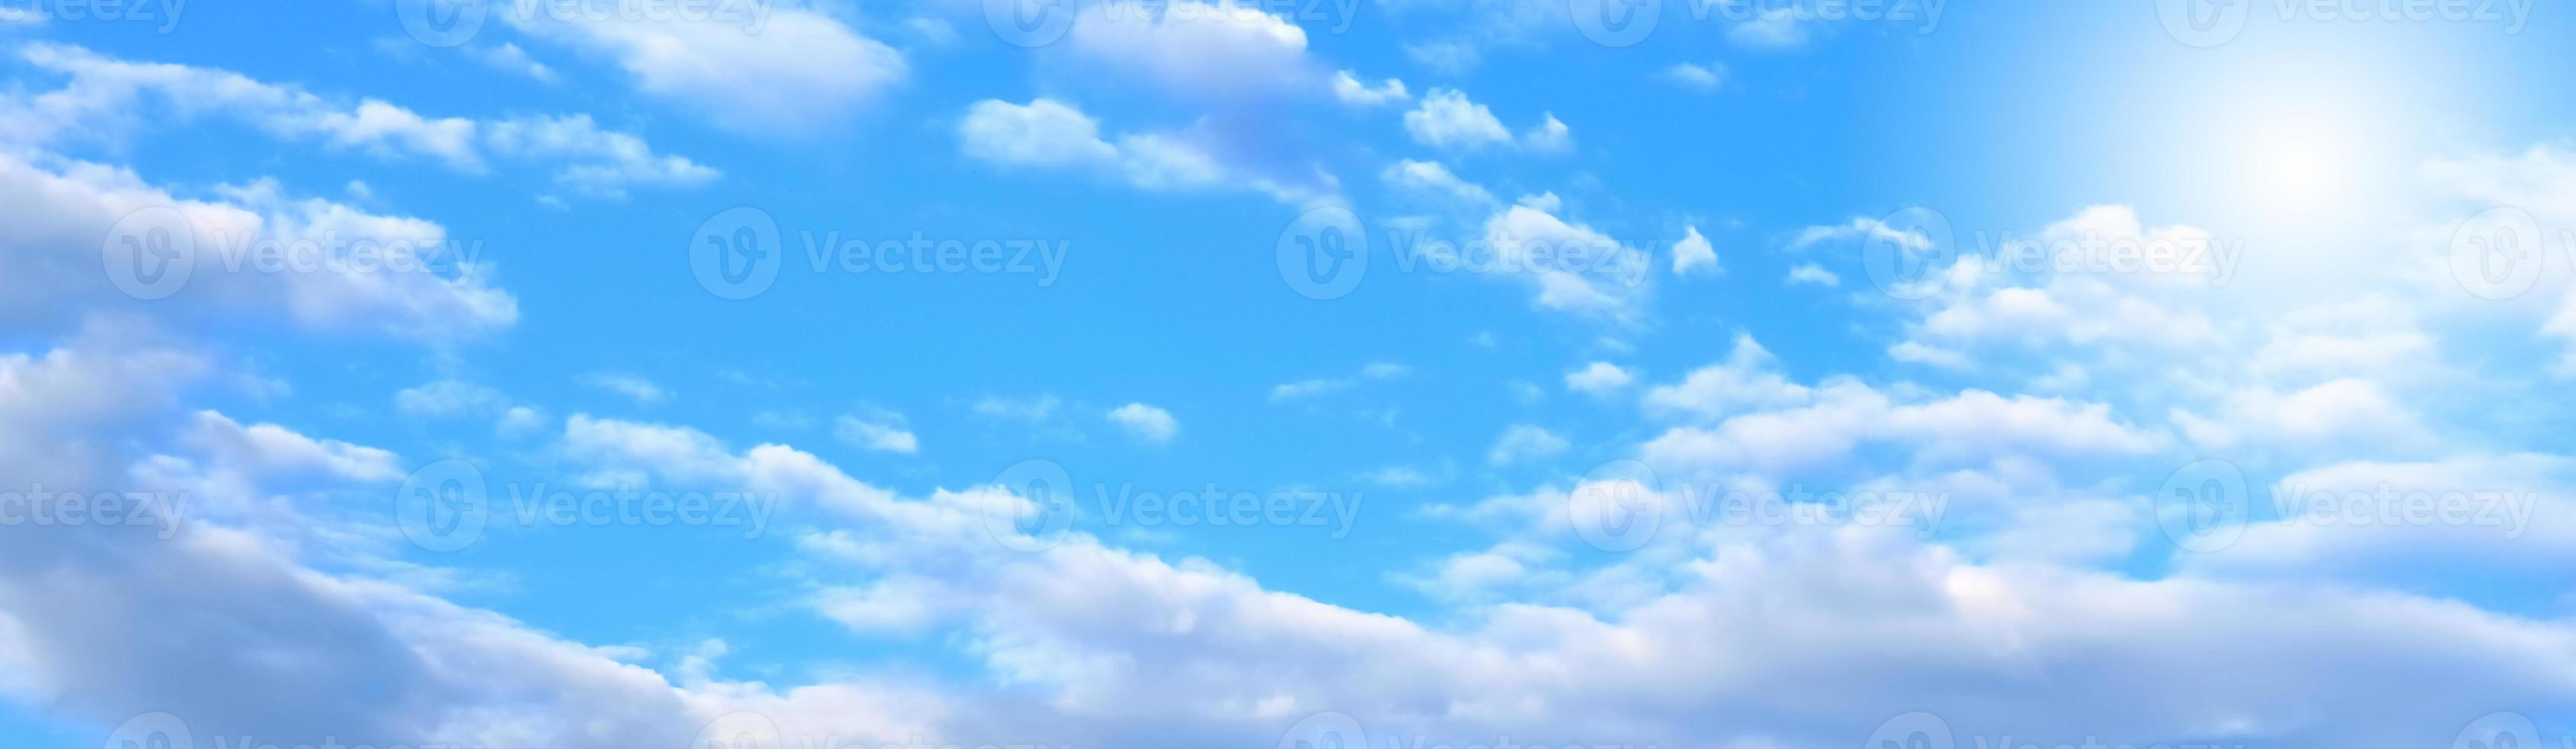 blauer Himmel und weiße Wolke foto